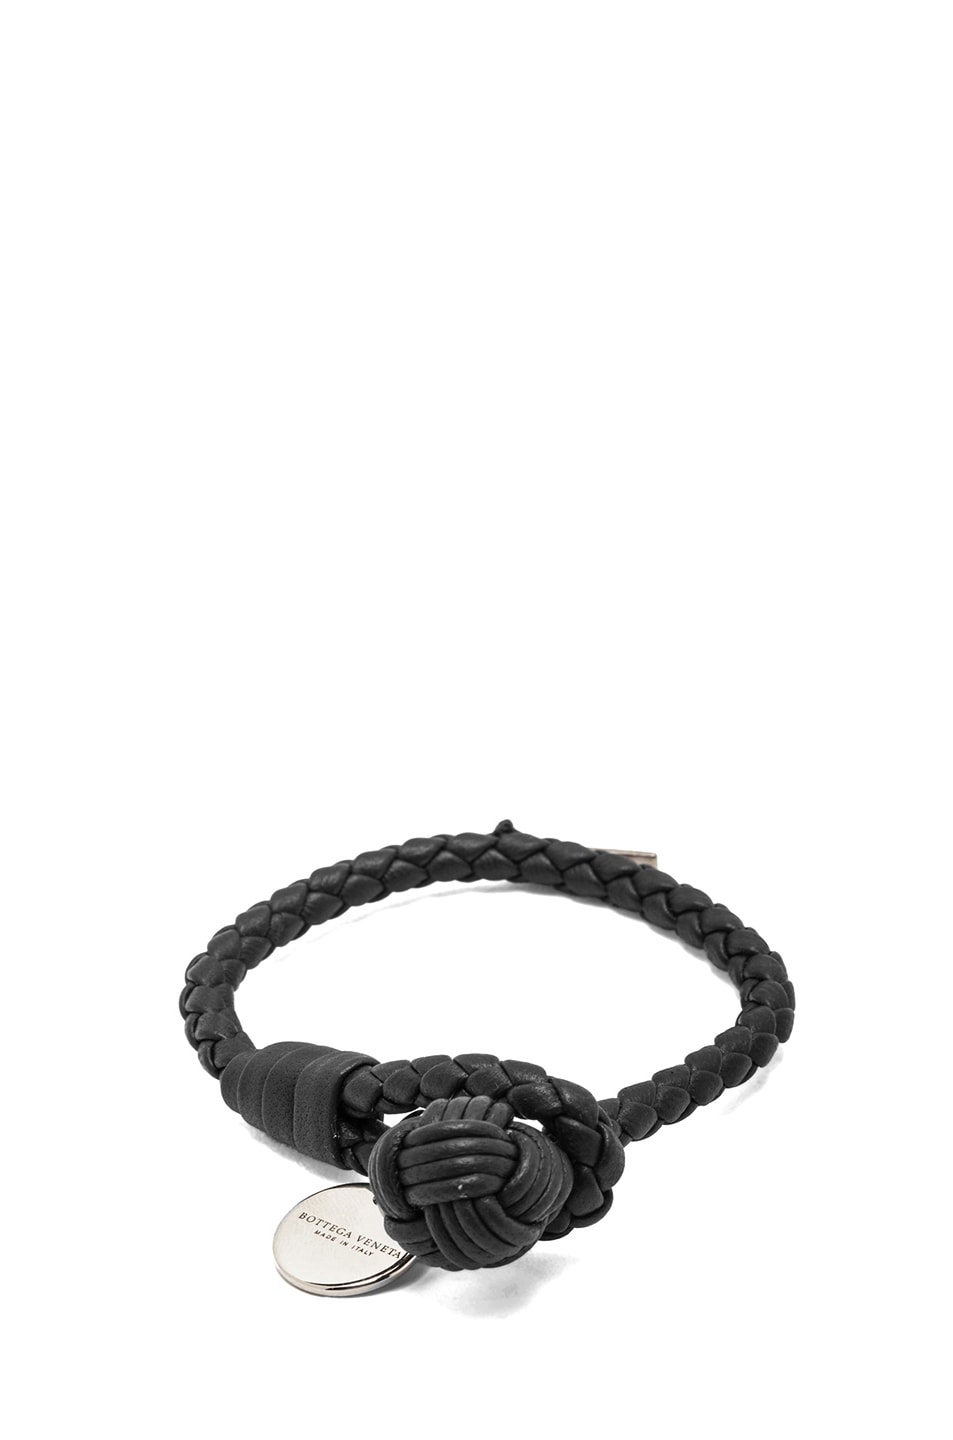 Bottega Veneta Nappa Leather Bracelet in Nero | FWRD